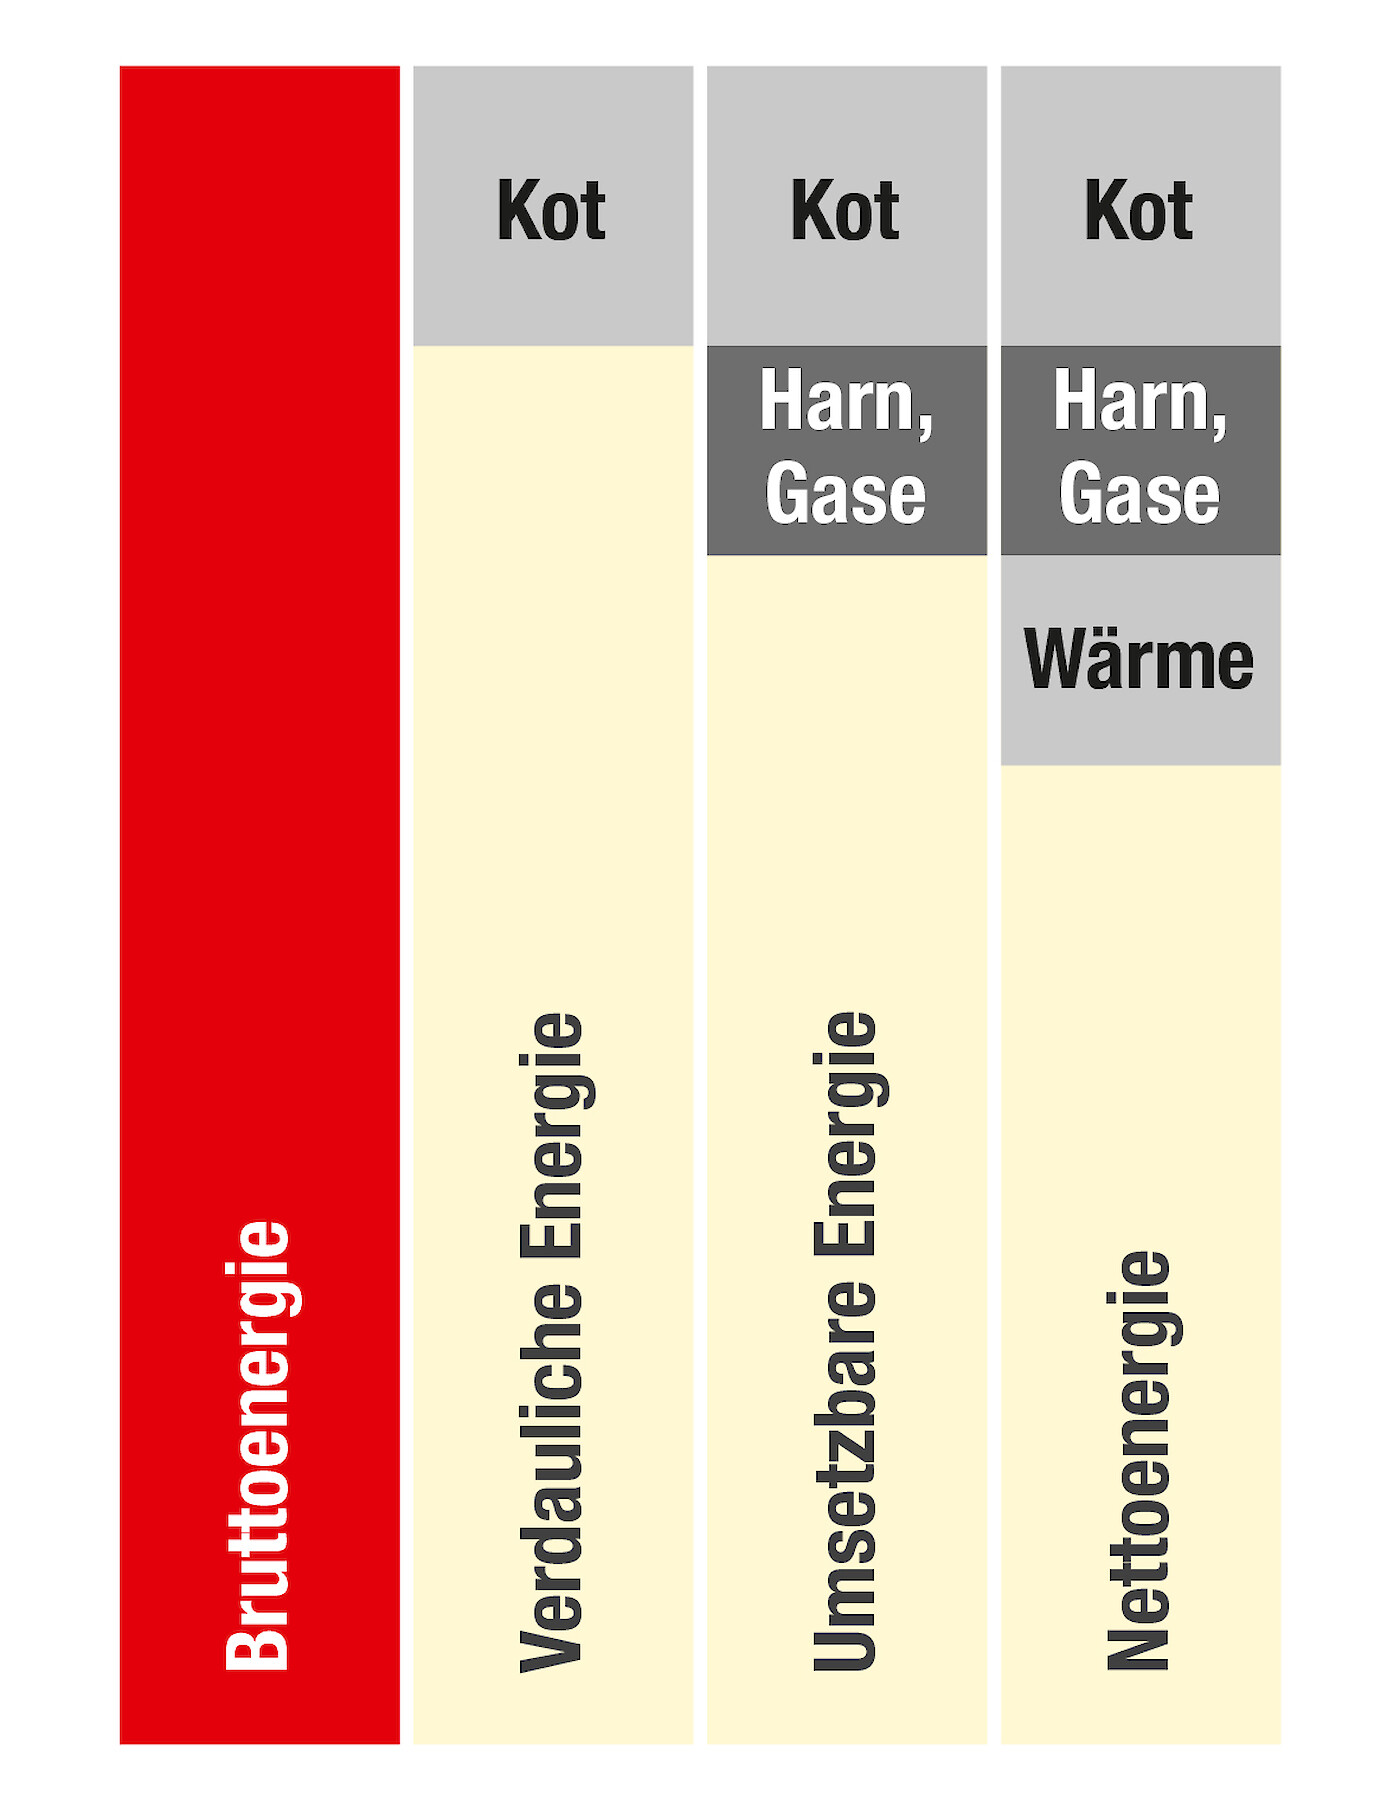 Grafische Darstellung Bruttoenergie im Vergleich zu anderen Energiebewertungssystemen in der Schweinemast (© Deutsche Tiernahrung Cremer).